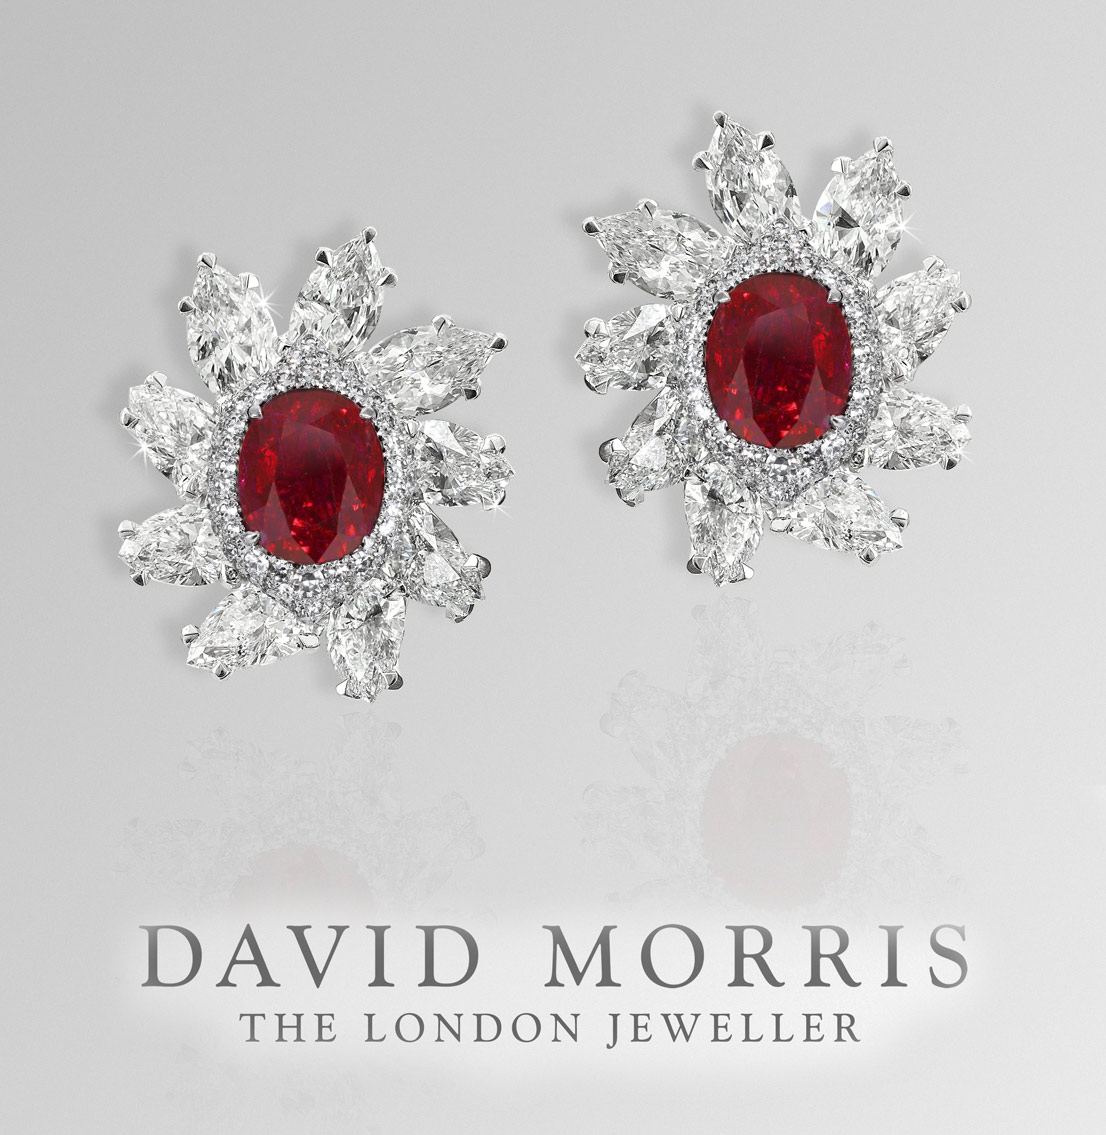 Серьги David Morris с бриллиантами и рубинами цвета голубиной крови. Один рубин - 5.09 карата, другой 5.02 карата, без термальной обработки дэвид давид моррис